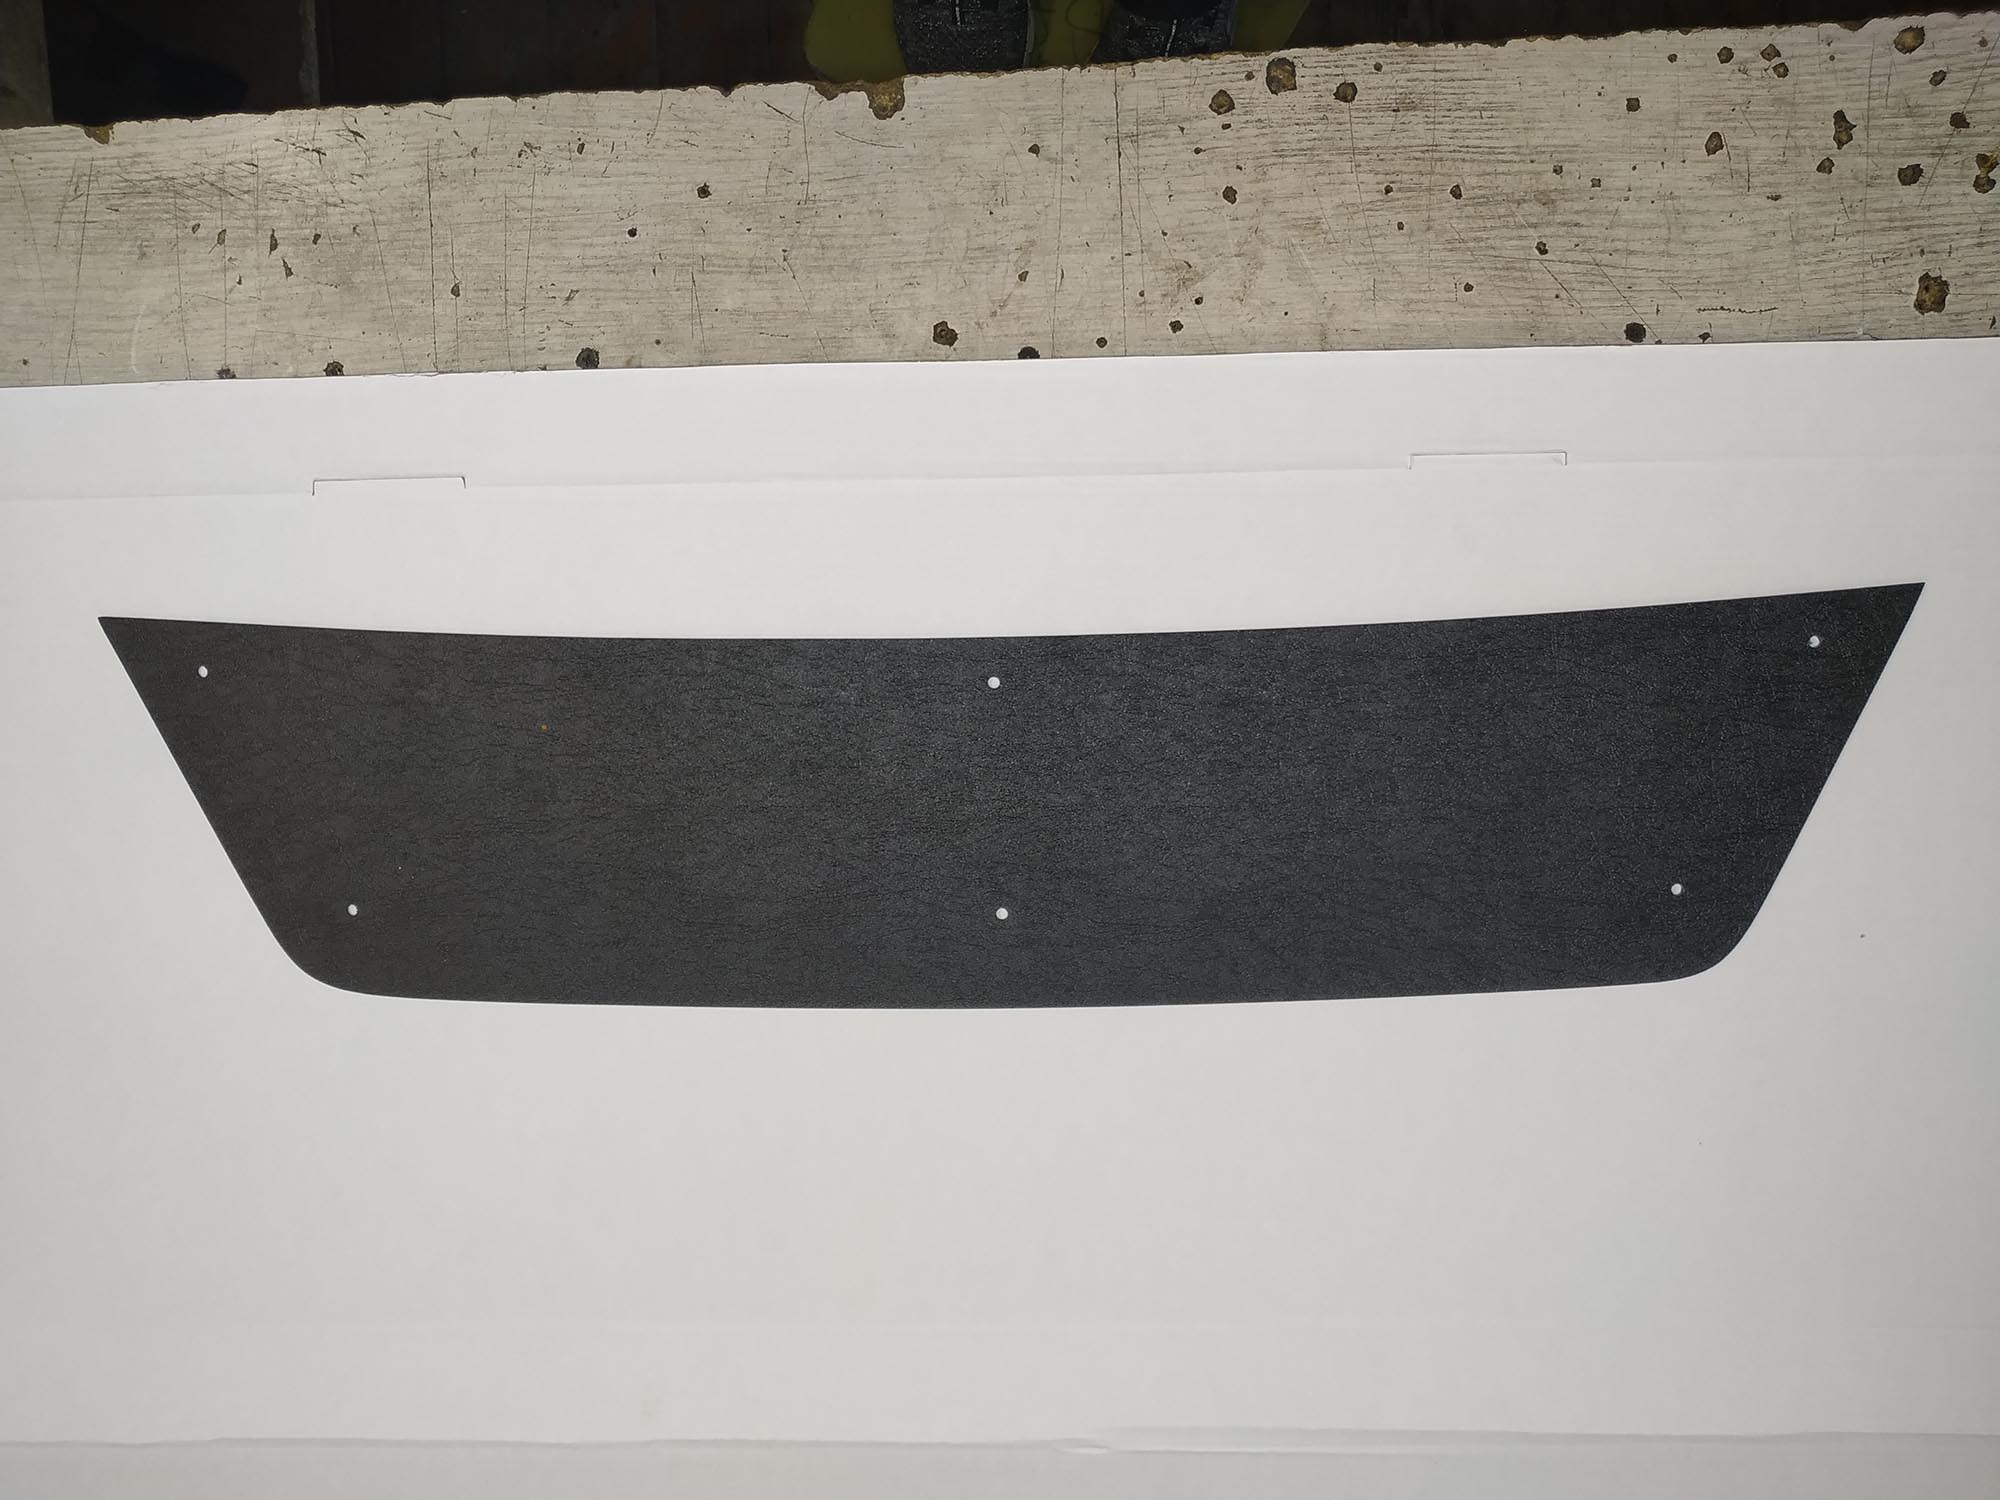 Зимняя защита радиатора ProtectGrille нижняя для Nissan Terrano (2014-н.в. Черная)